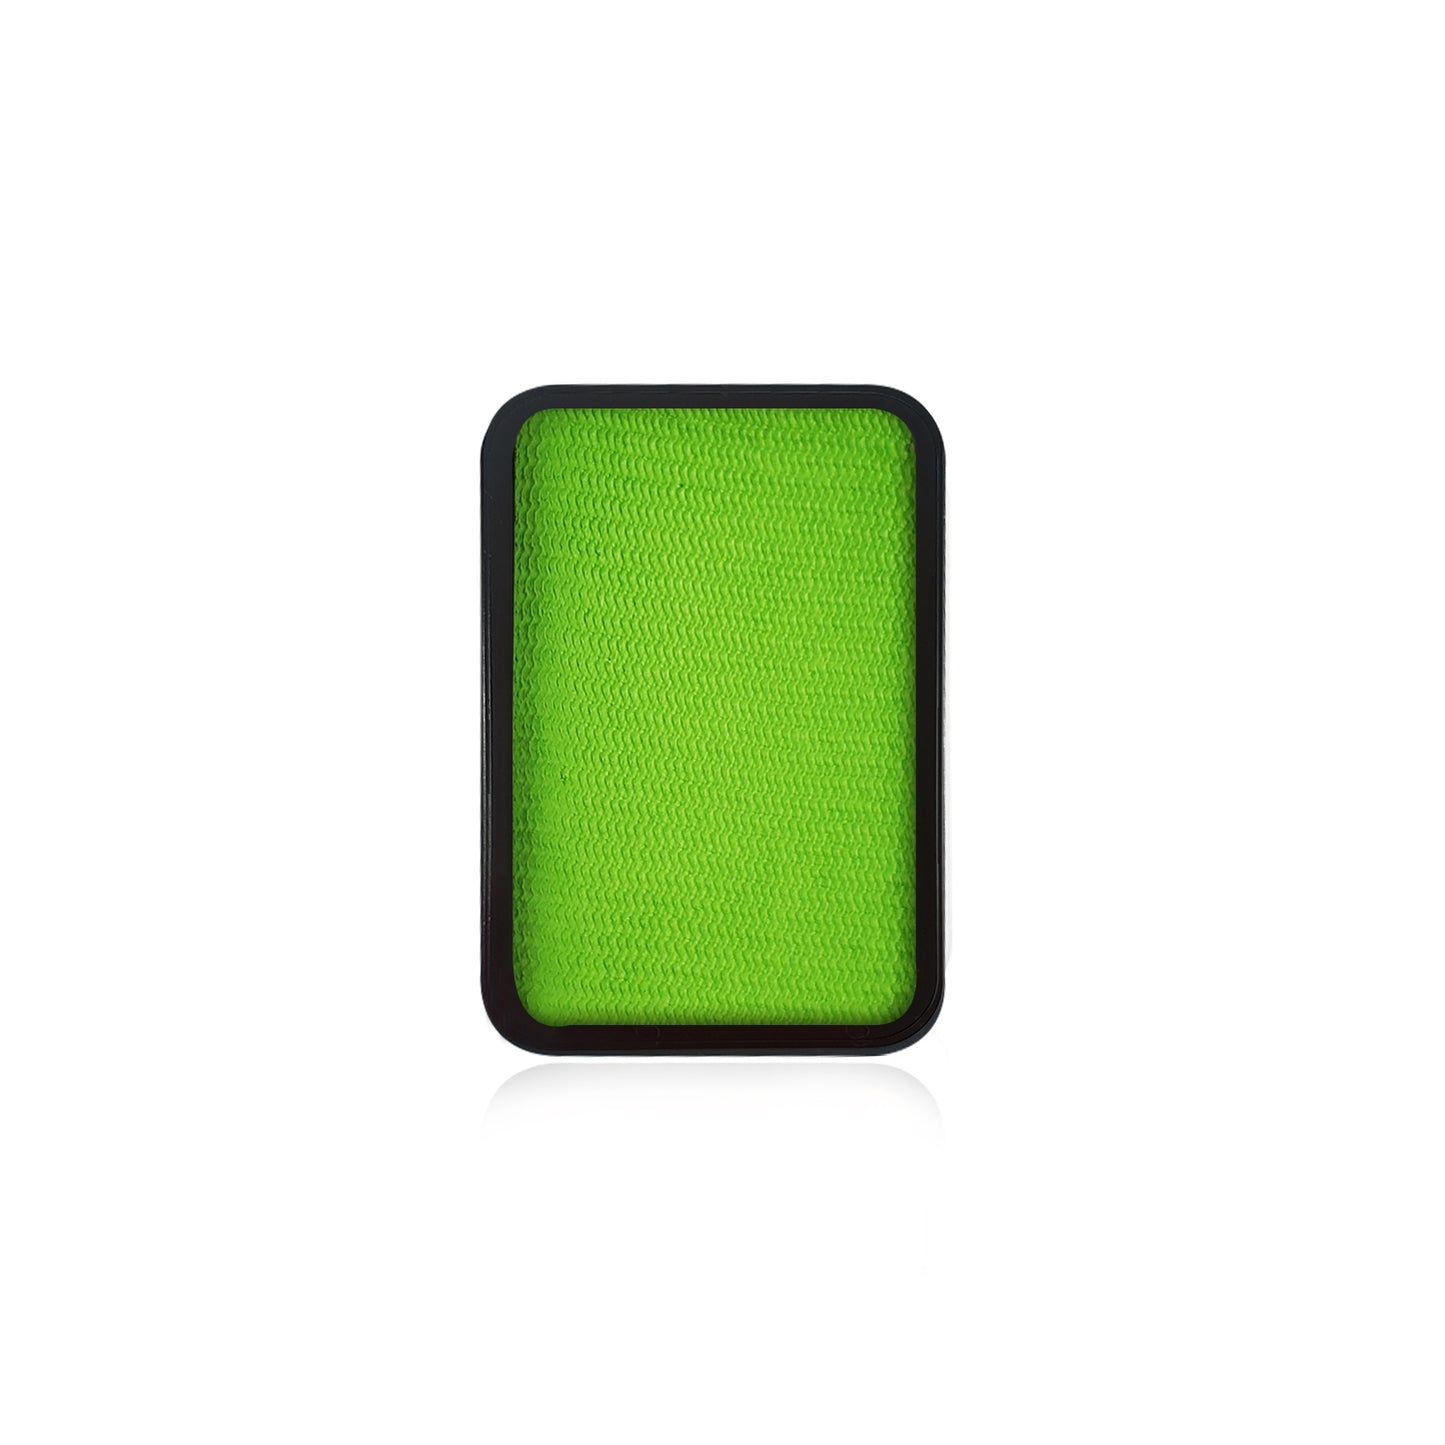 Kraze FX Face Paint Refill - Lime Green (10 gm)